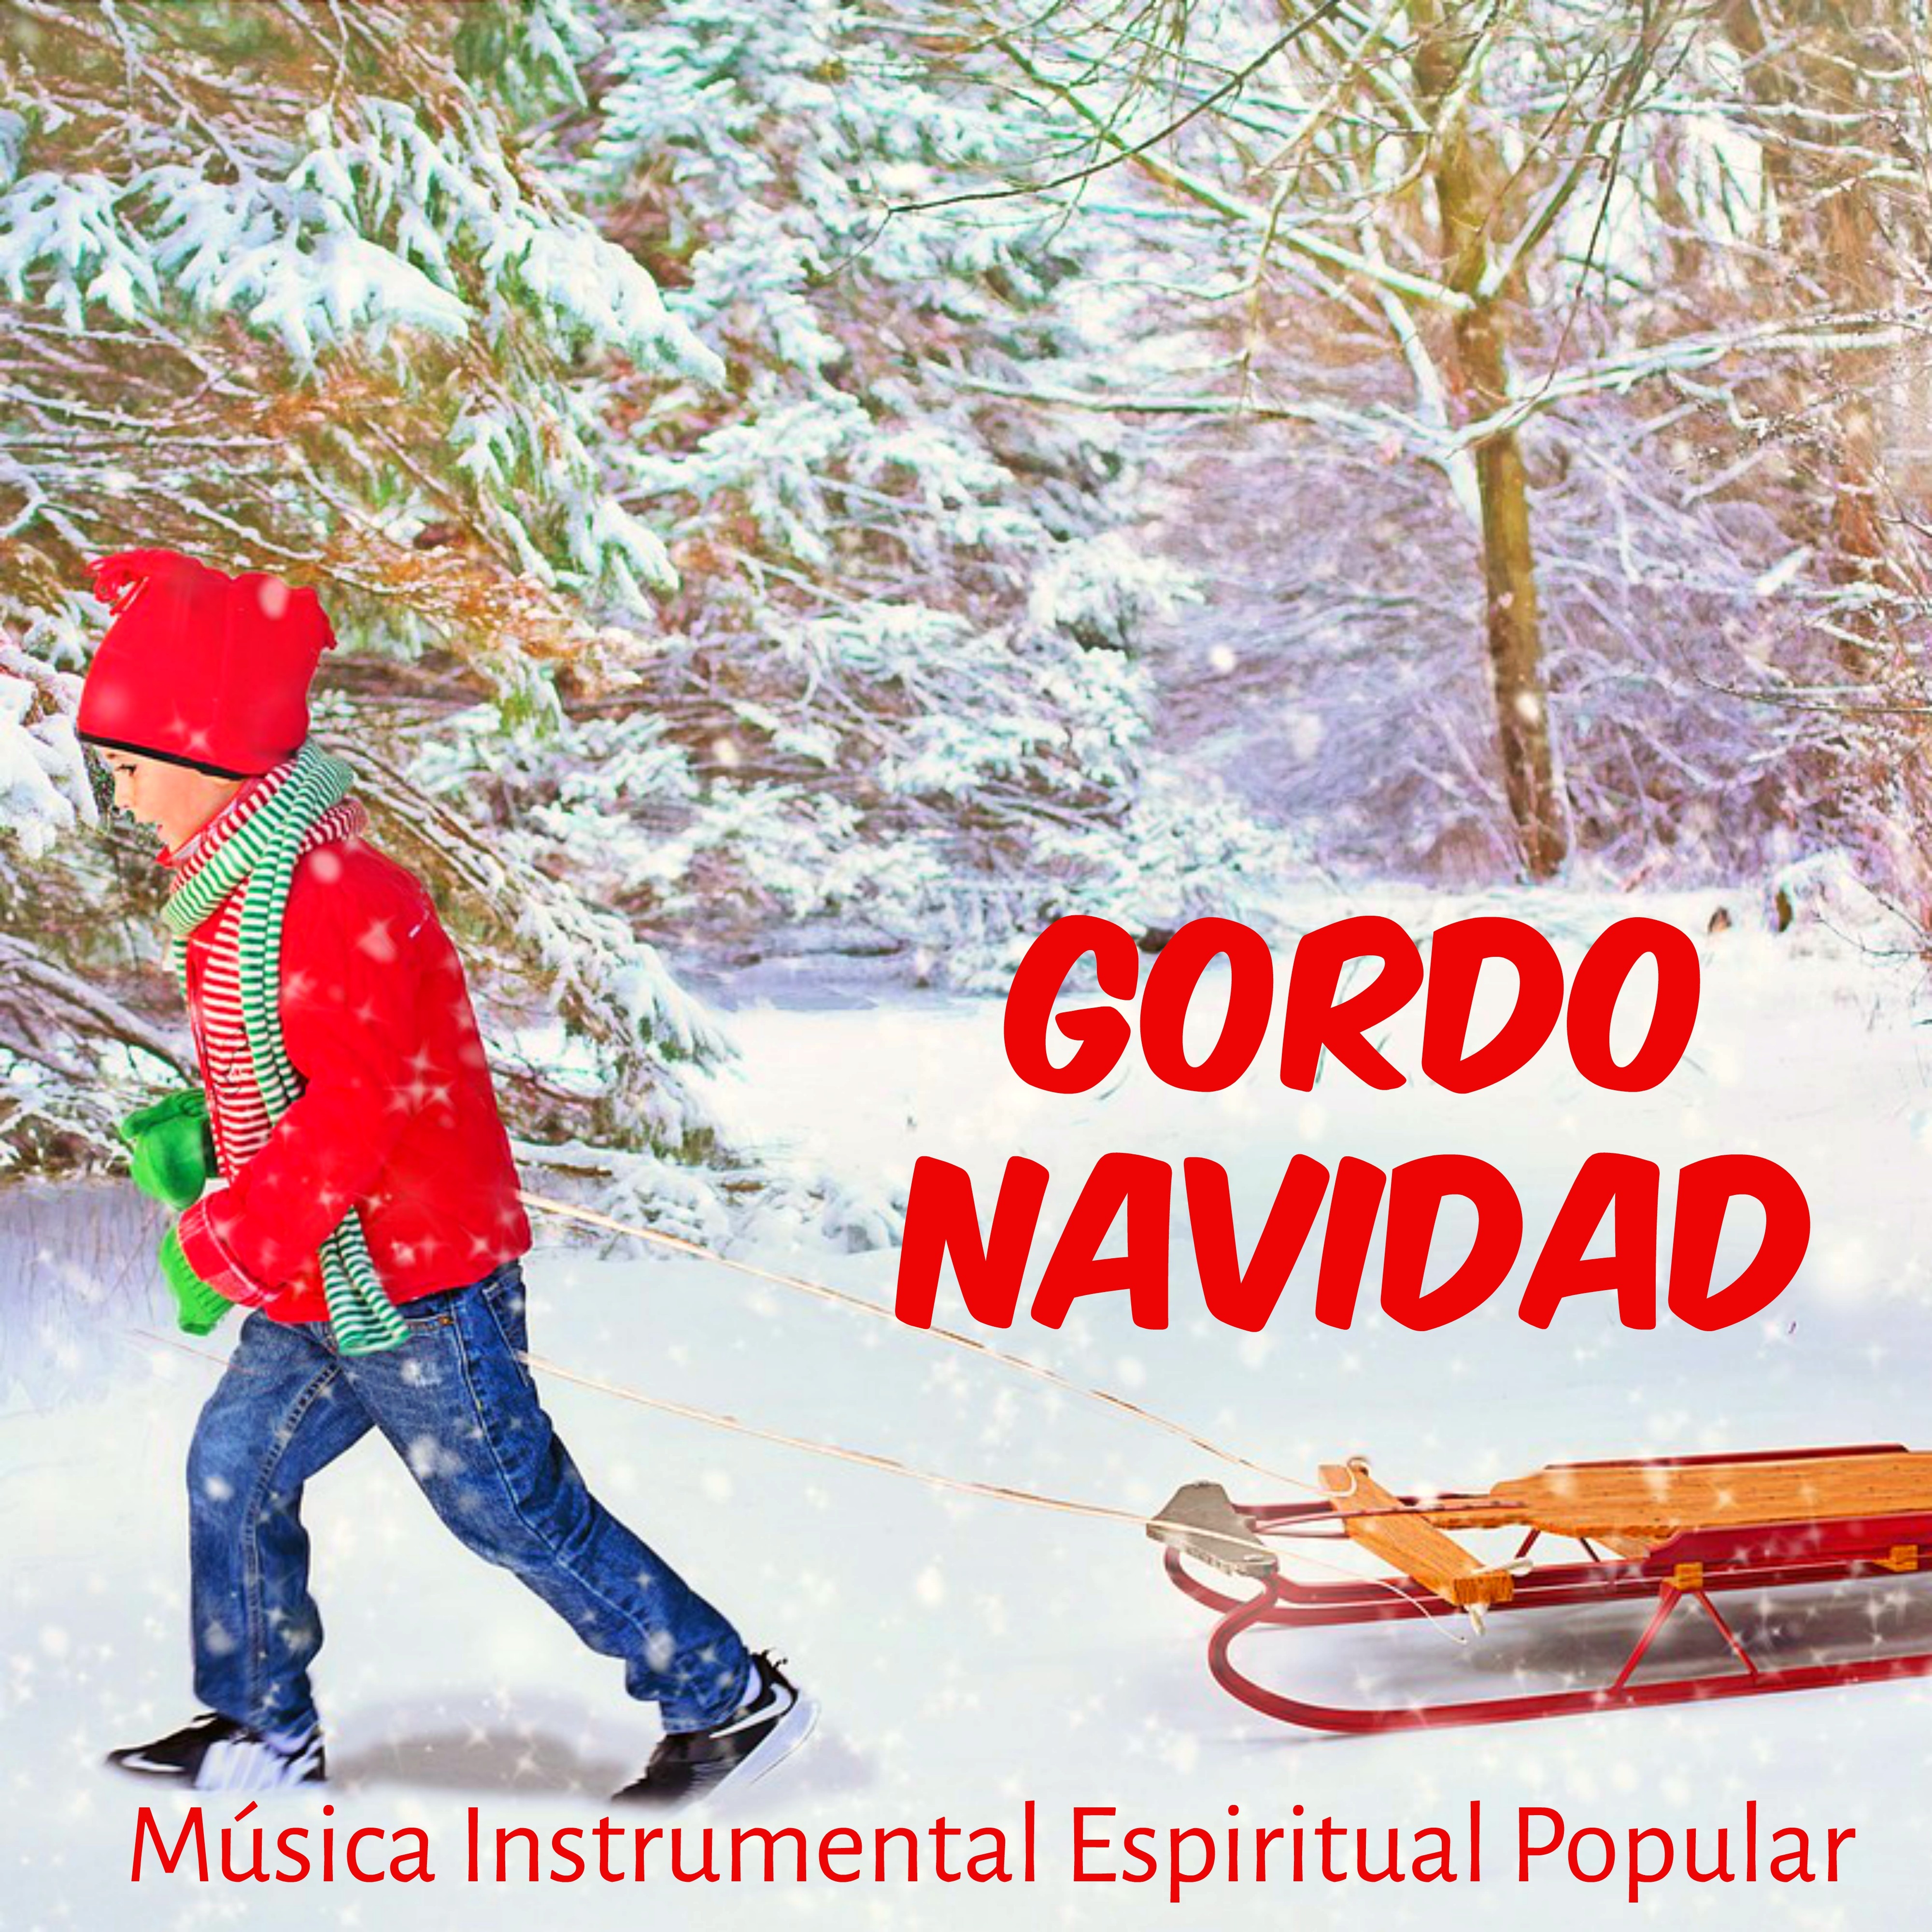 Gordo Navidad  Mu sica Instrumental Espiritual Popular para Estar Juntos Vacaciones de Navidad Poder de la Mente con Sonidos Naturales Tradicionales